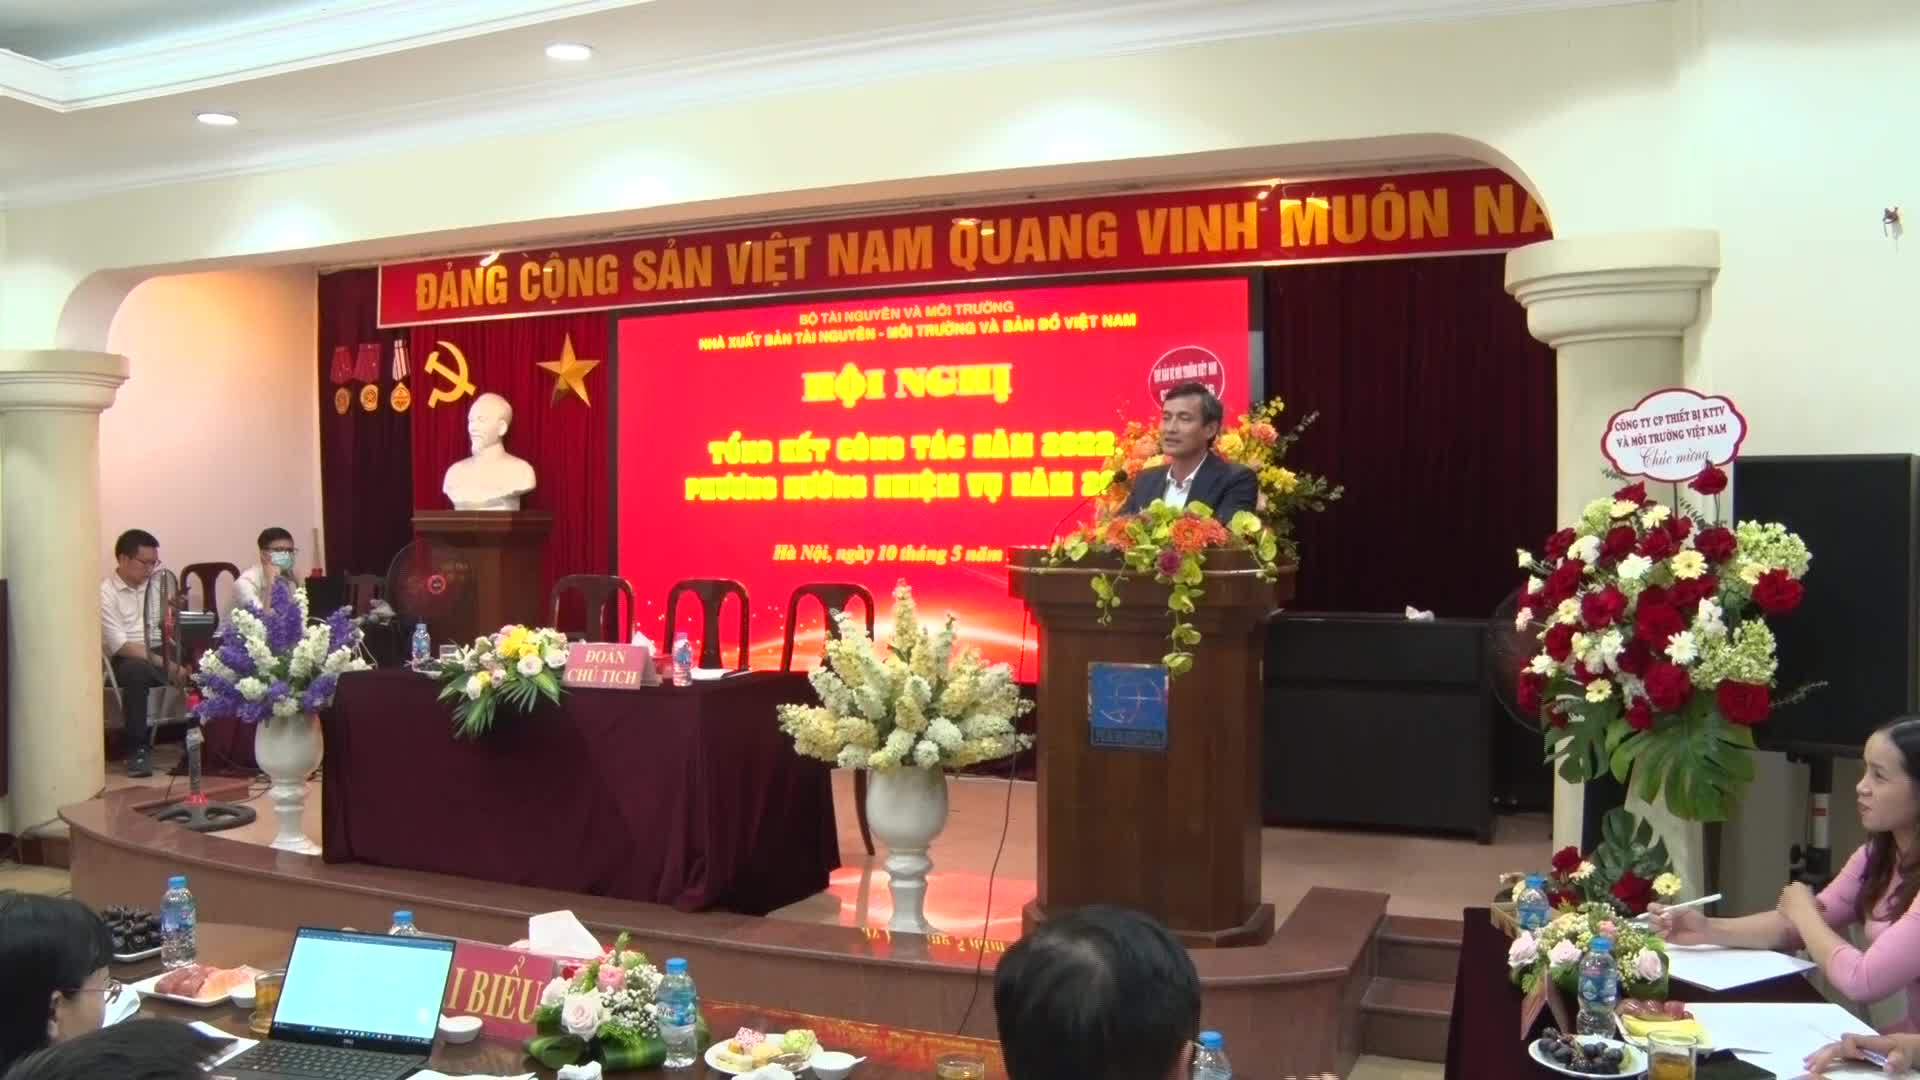 Nhà xuất bản TNMT và Bản đồ Việt Nam đạt Top 10 Thương hiệu phát triển Châu Á